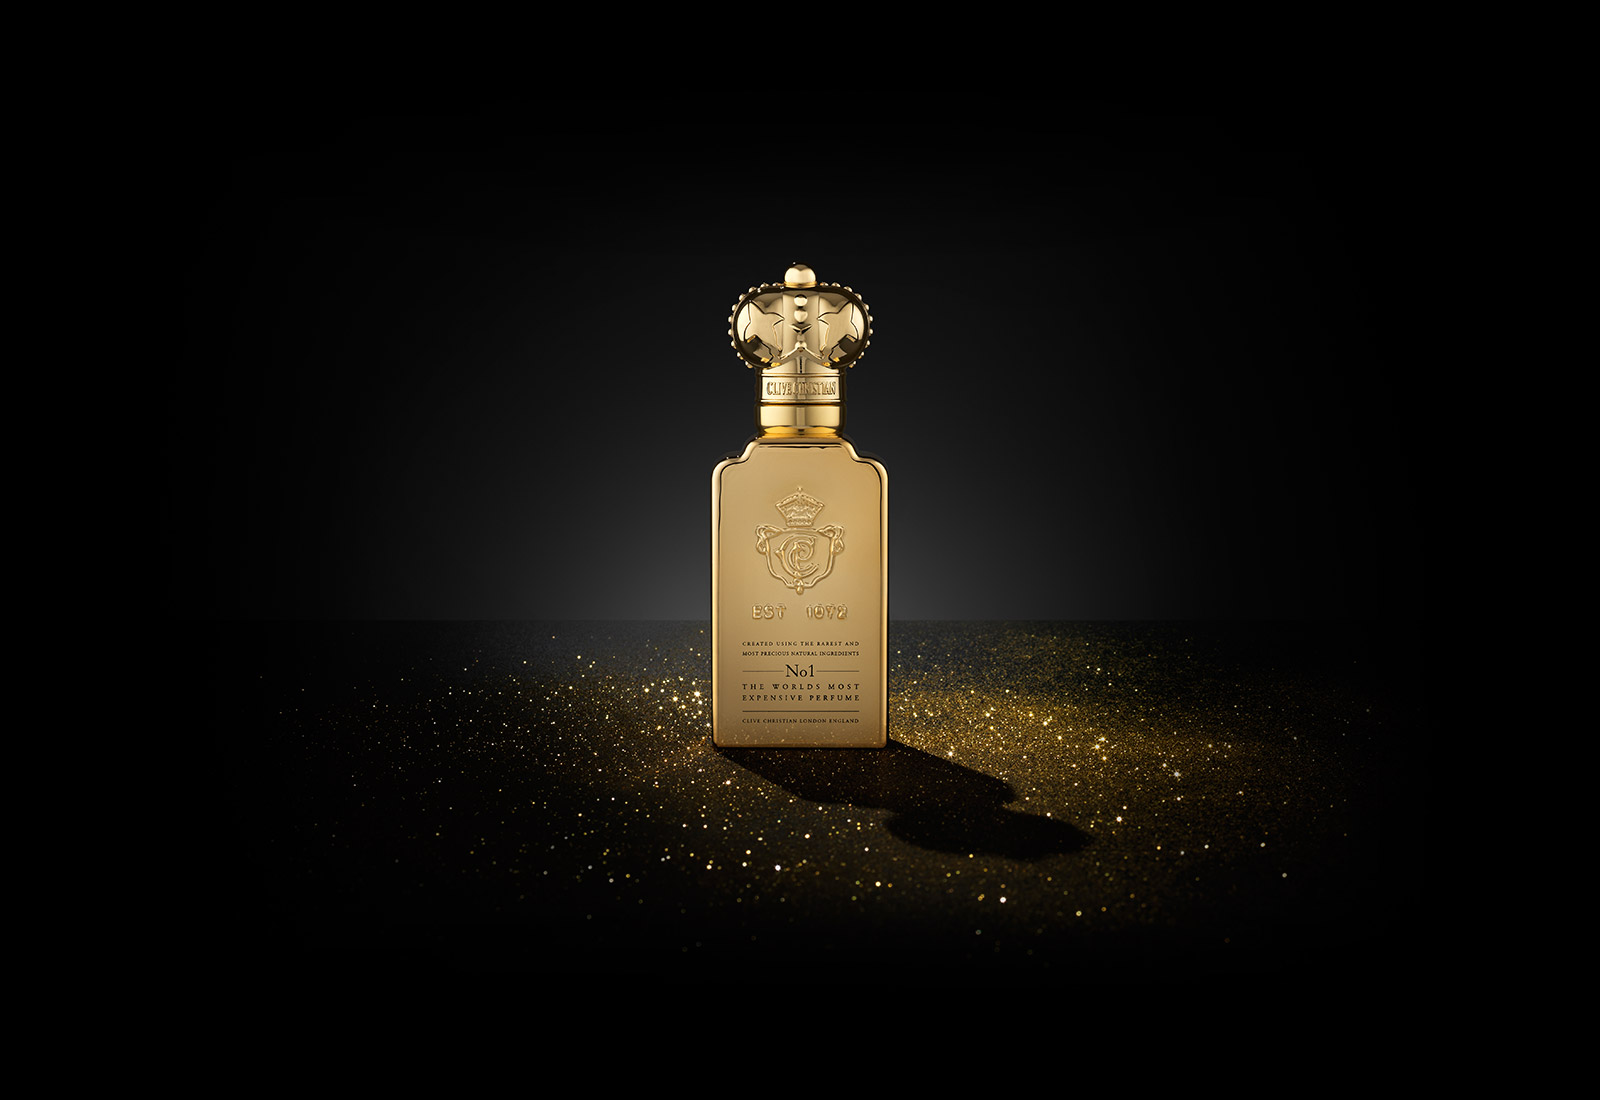 Szépség a világ minden kincséért - A világ 5 legdrágább parfüm összetevője